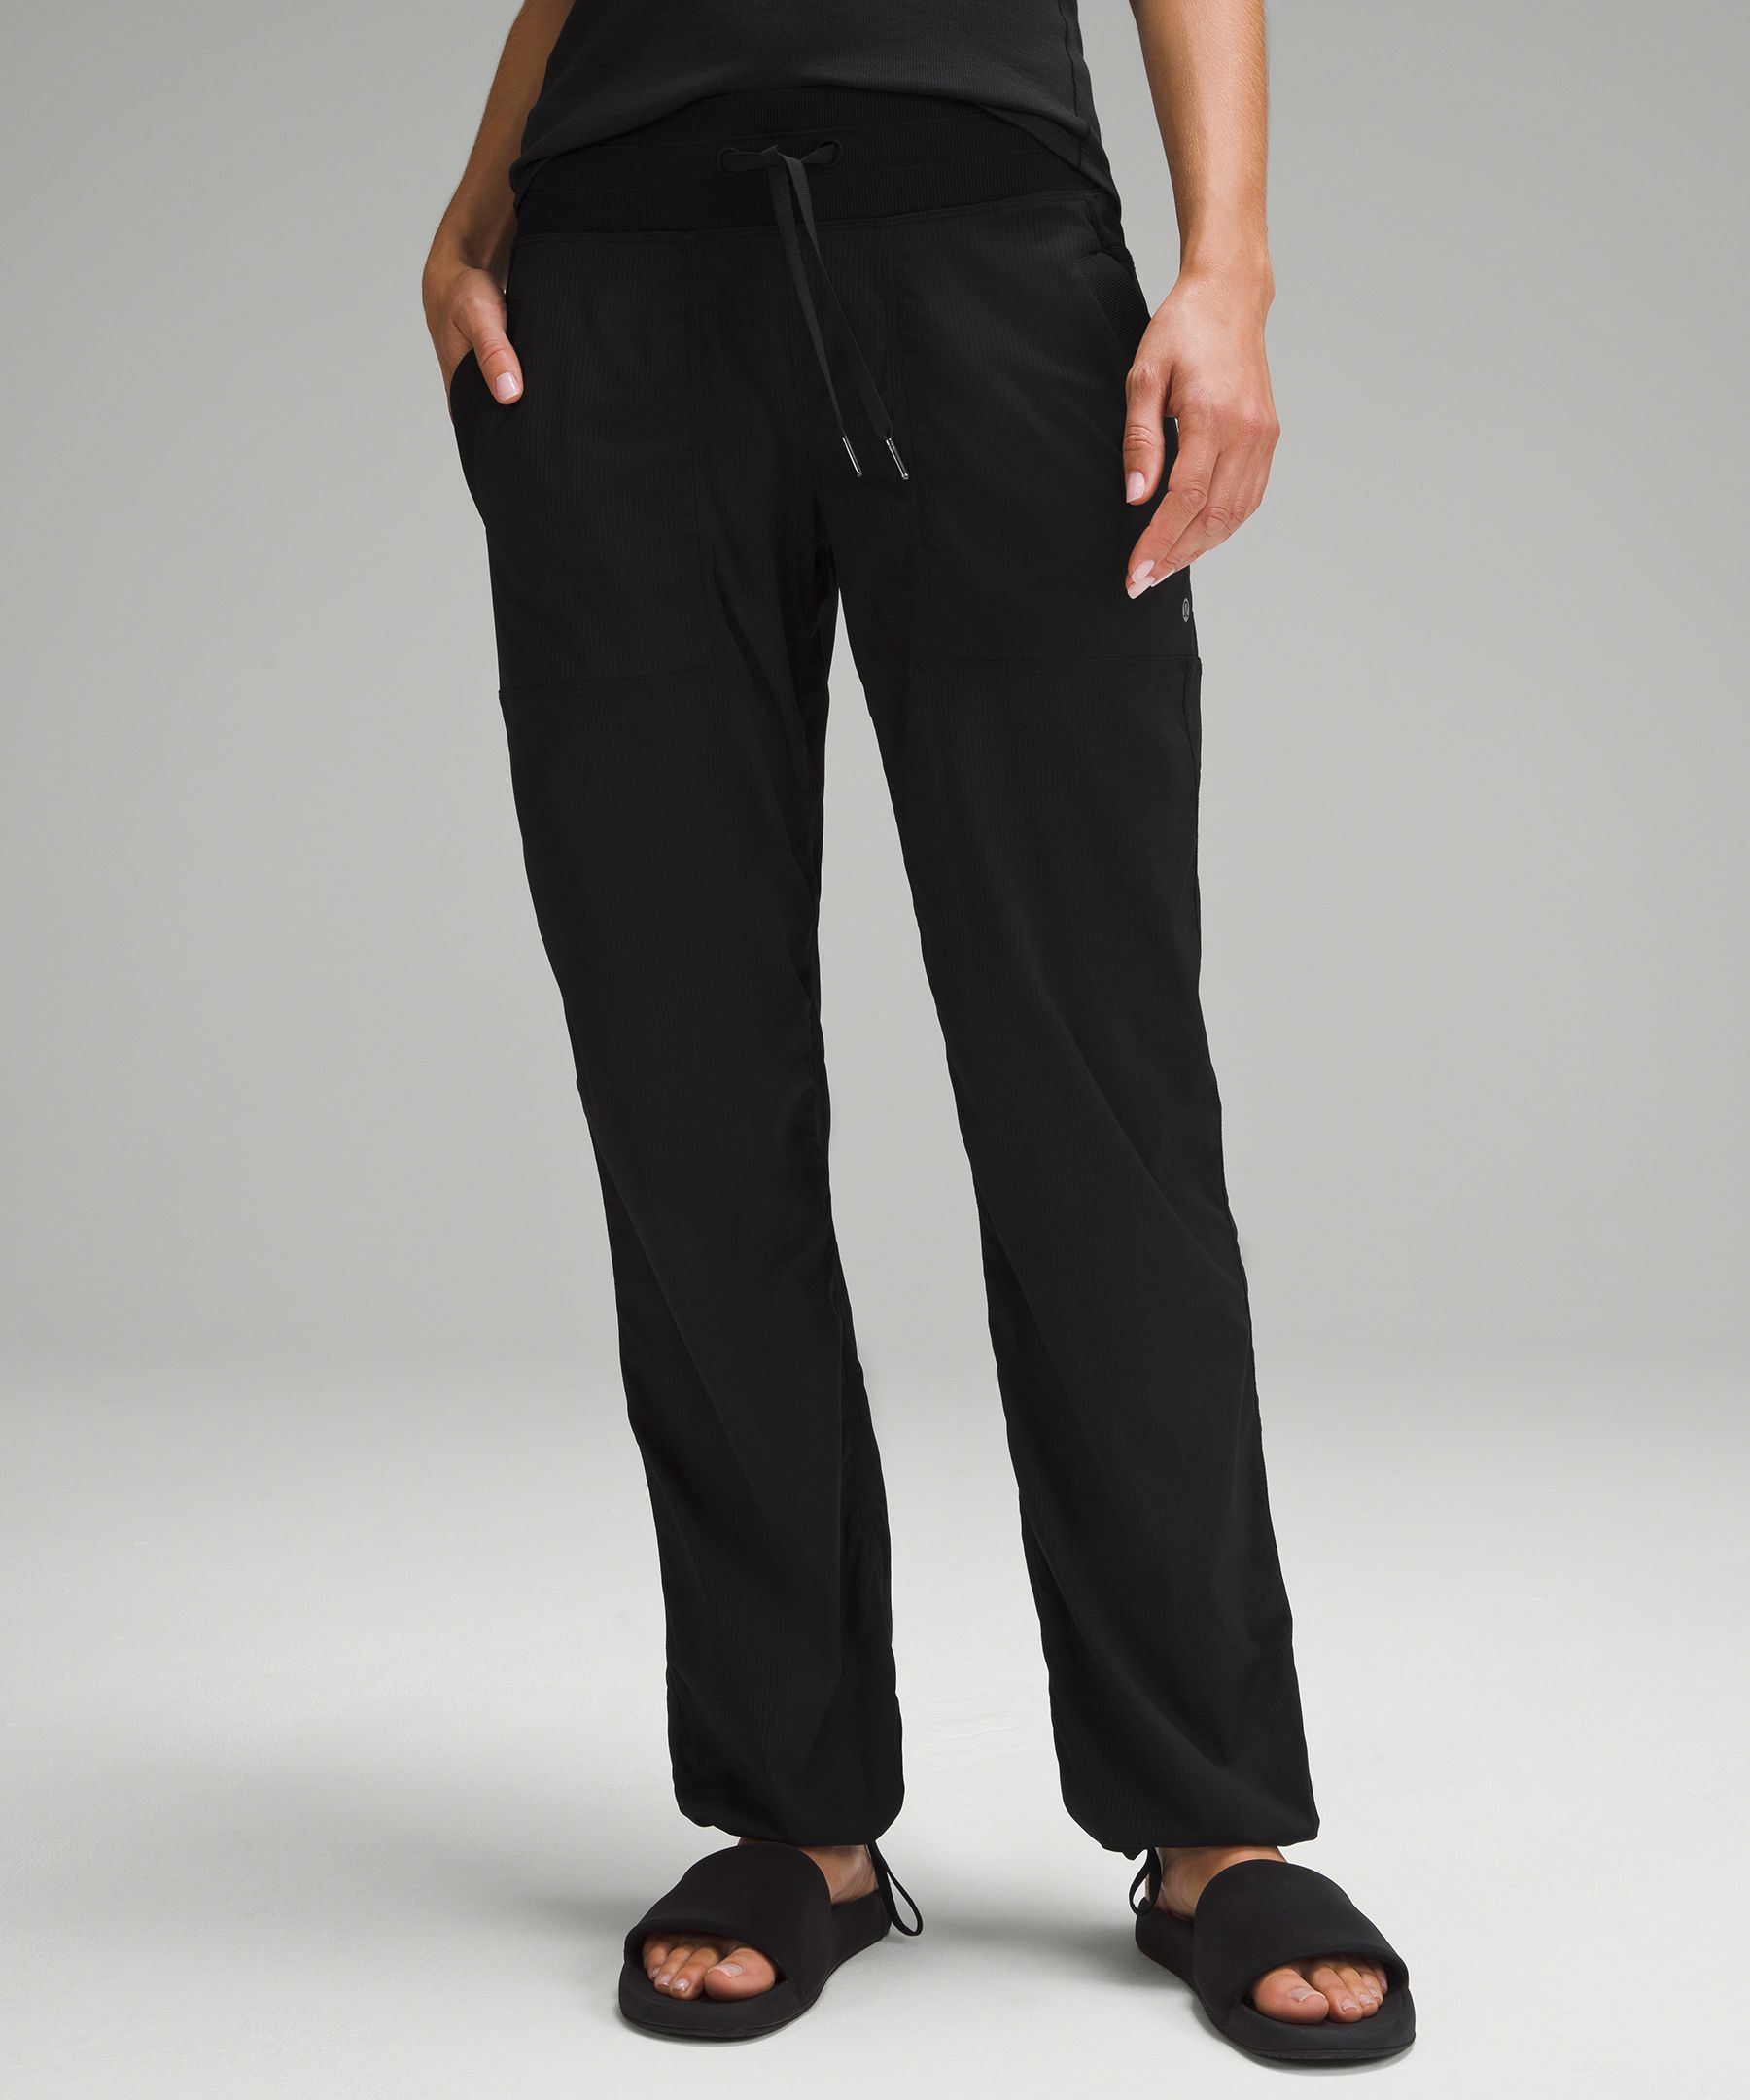 Lululemon Dance Studio Pants Black Lined Full Length 29” Inseam